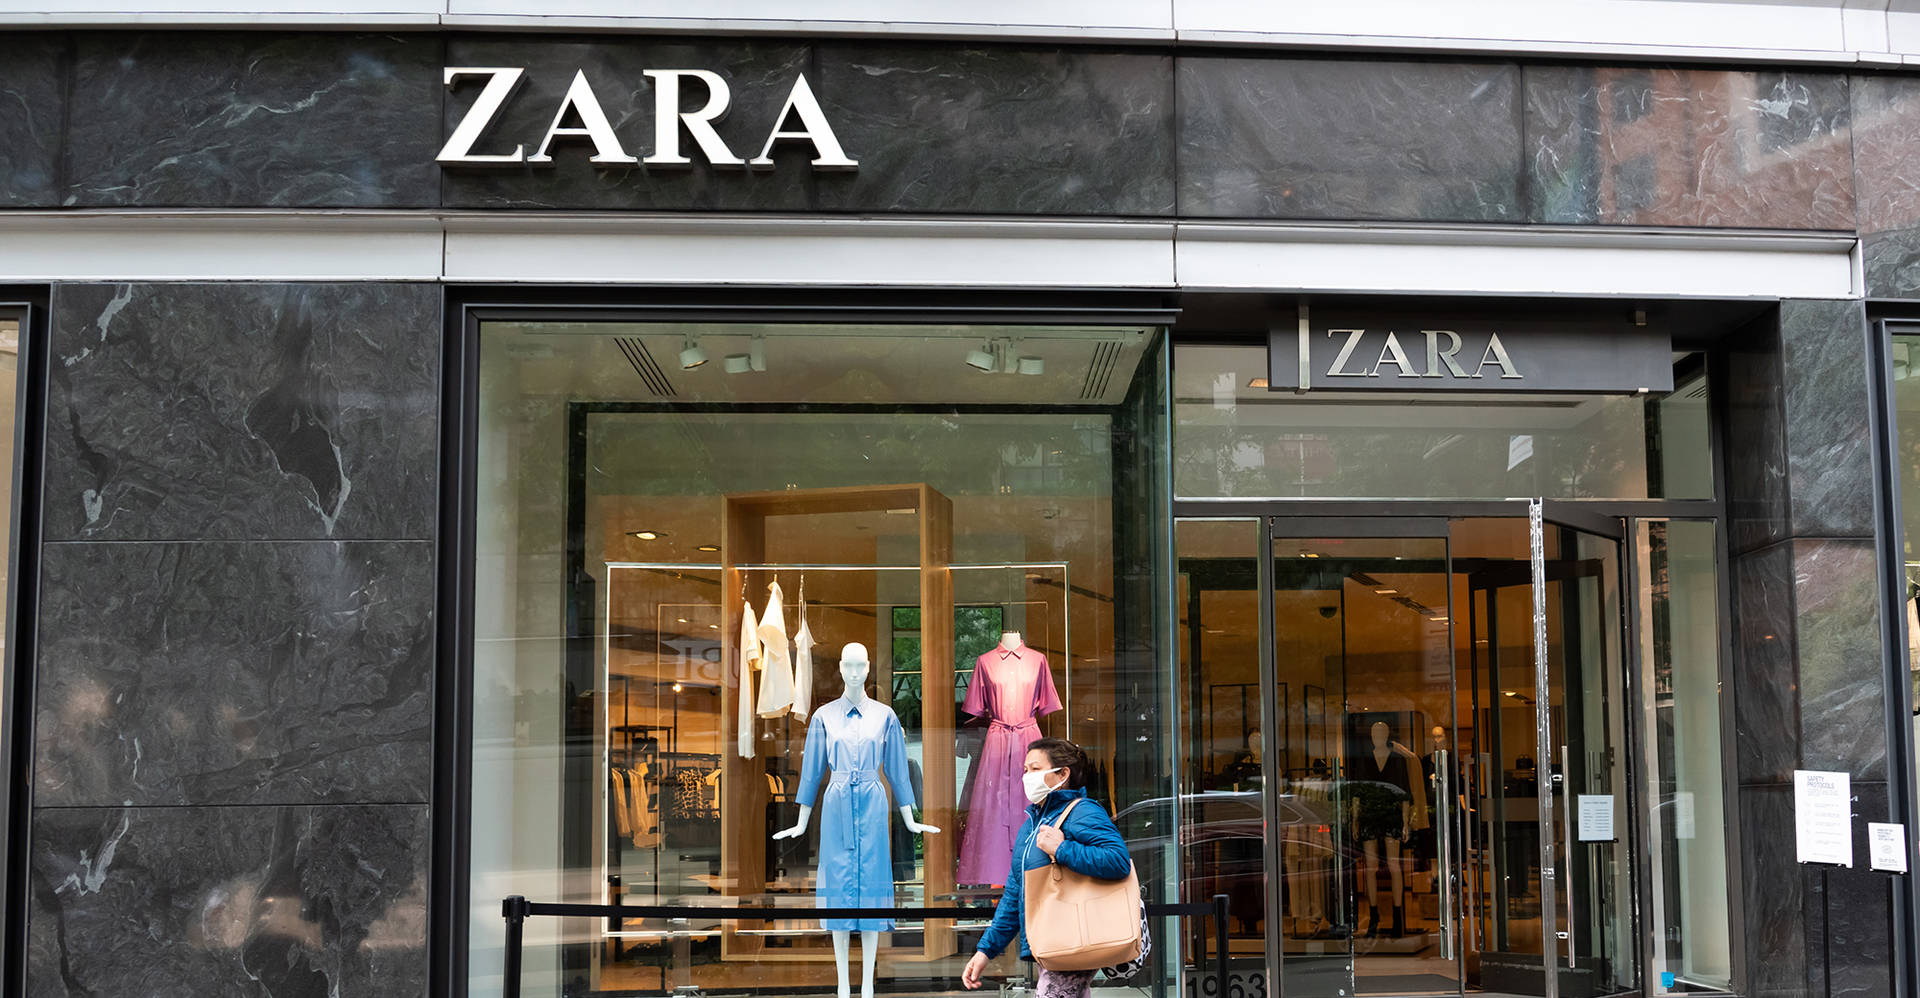 Zara Fashion Retail Giant Wallpaper